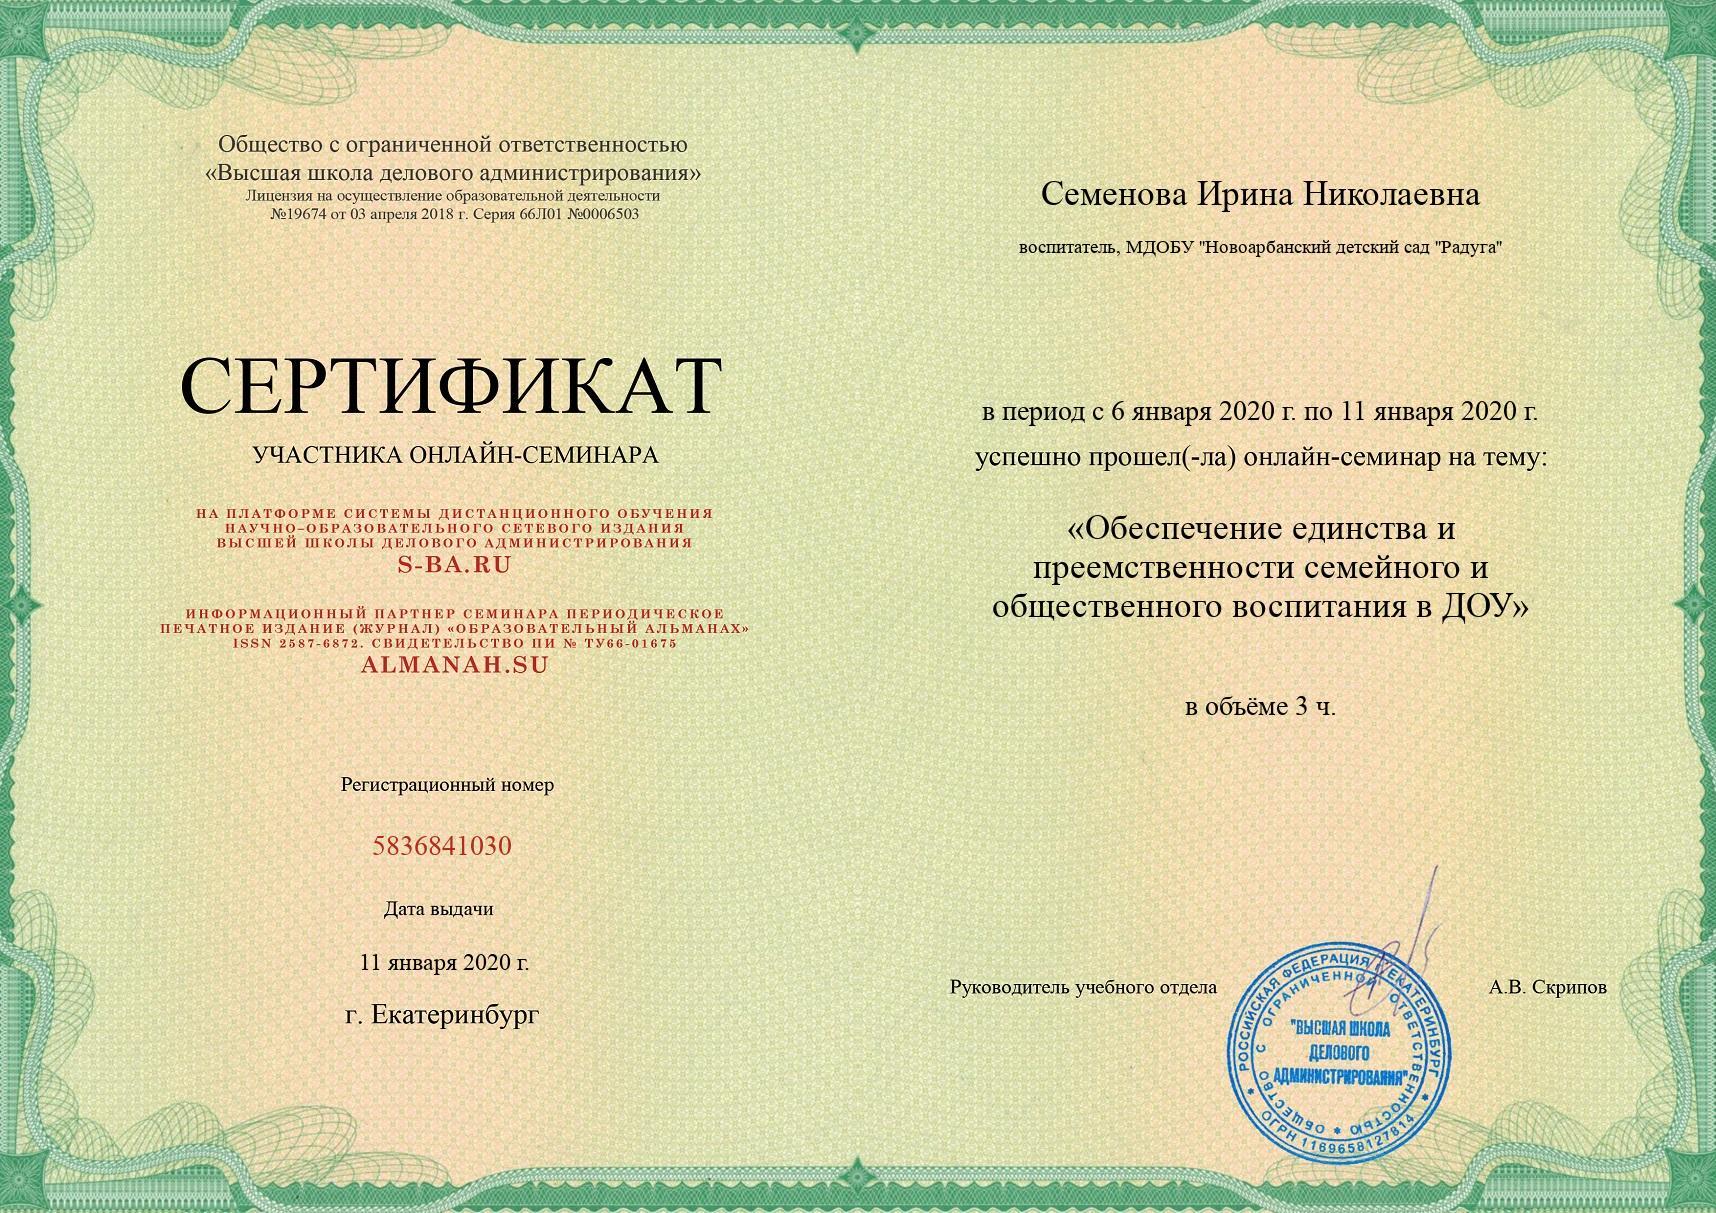 Сертификат Высшая школа делового администрирования